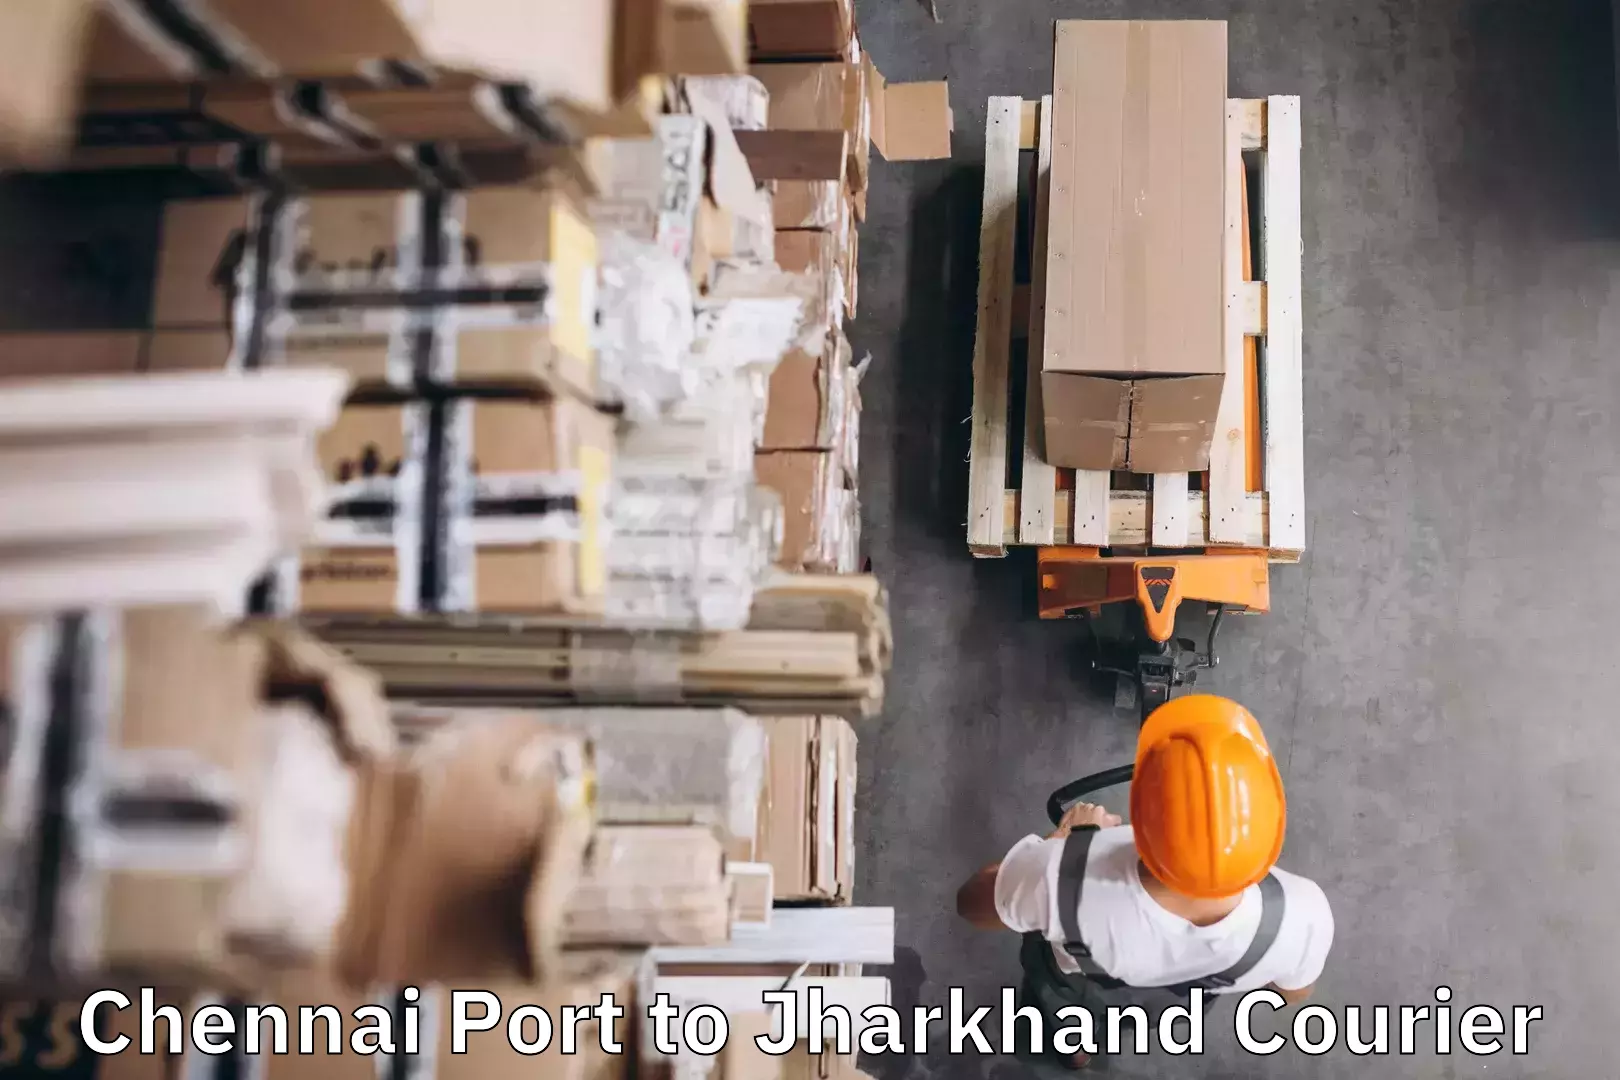 Baggage shipping experts Chennai Port to Shikaripara